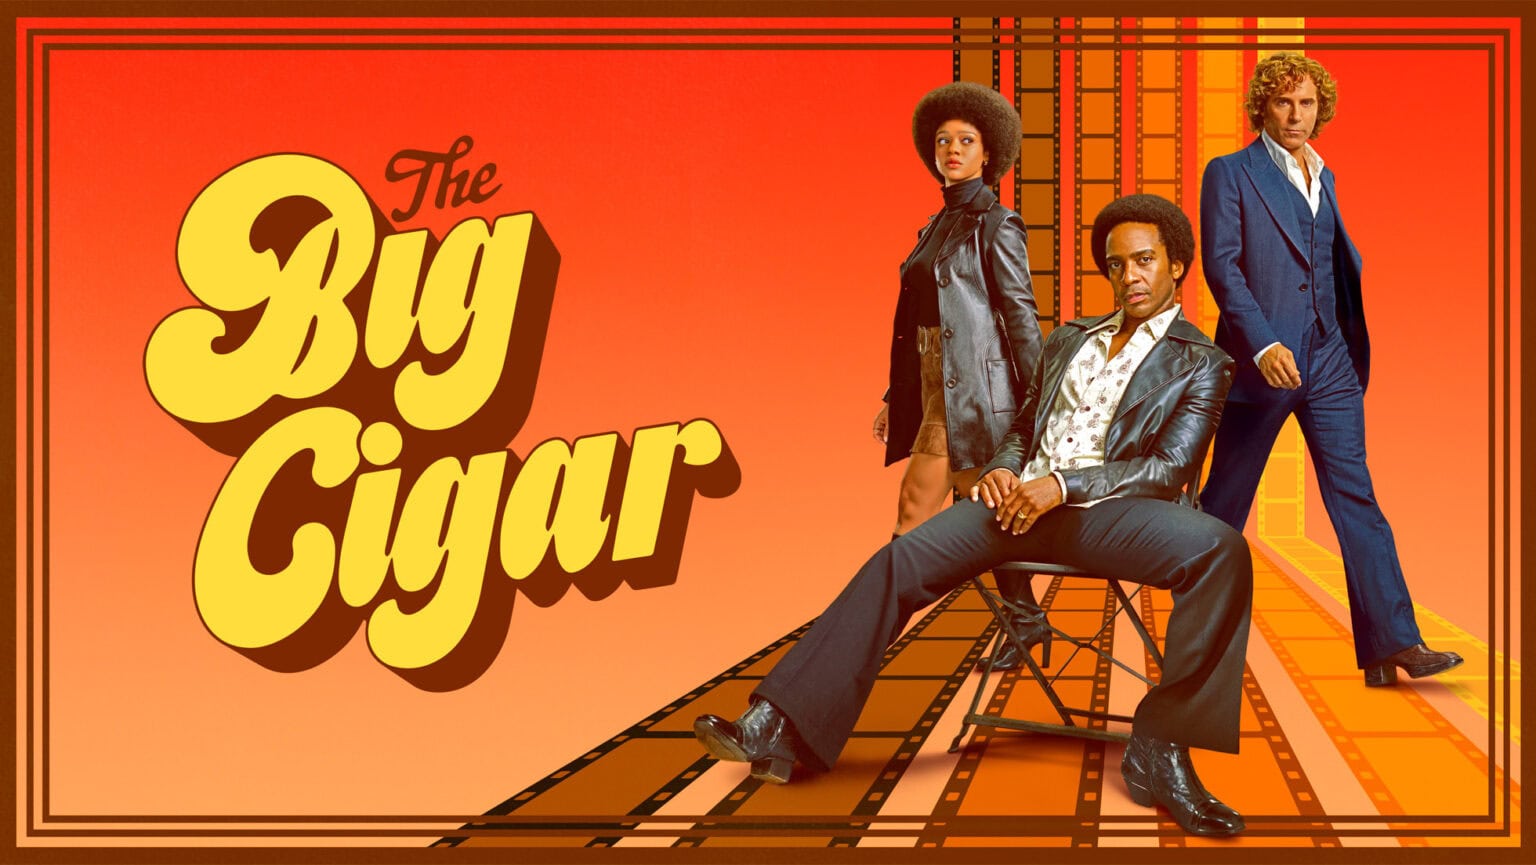 The Big Cigar trailer